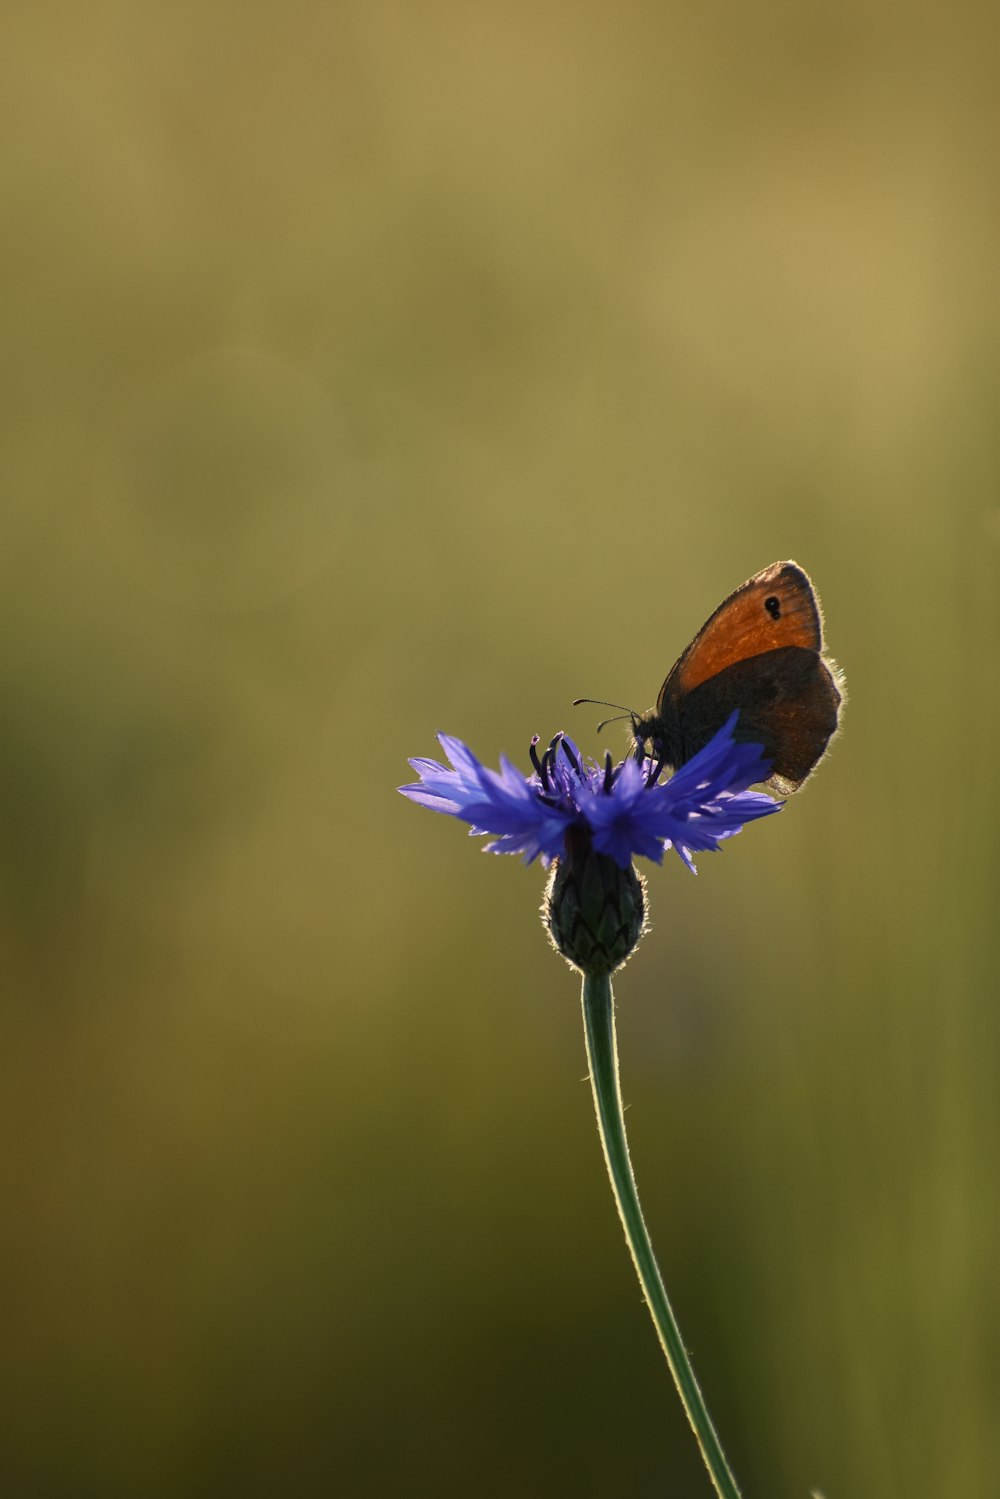 papillon brun perché sur la fleur violette en gros plan photographie pendant la journée